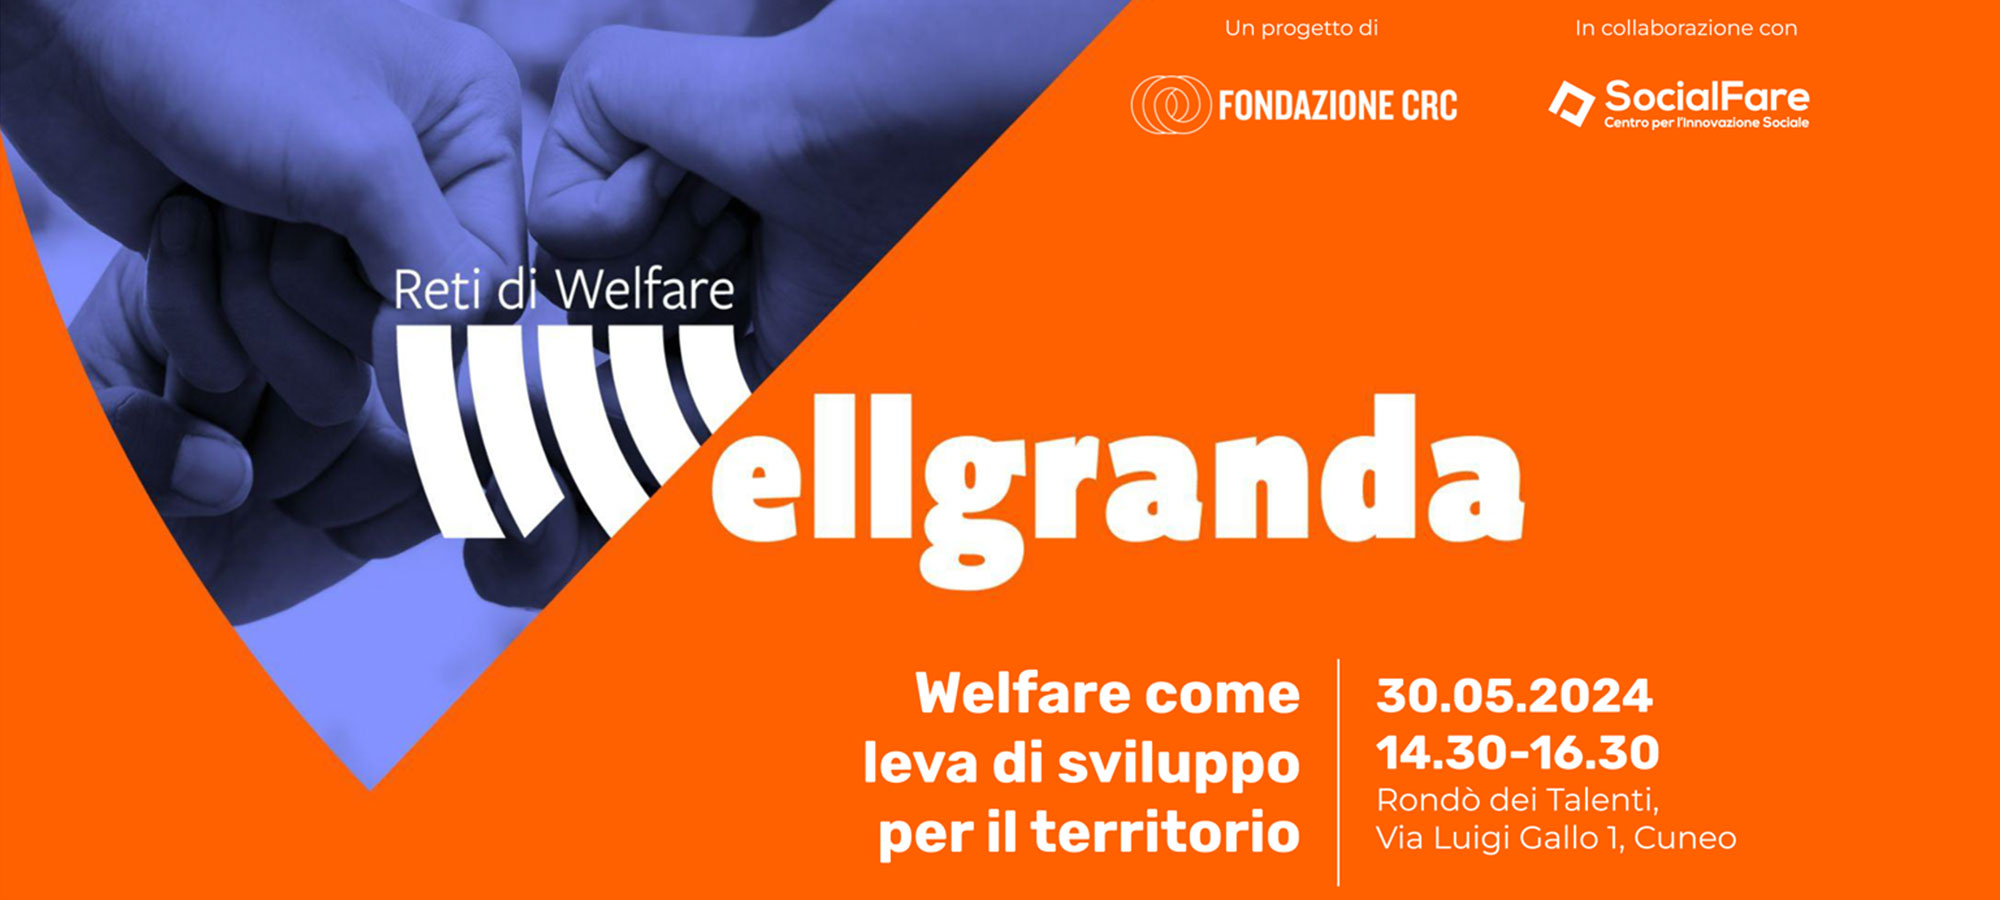 WELLGRANDA – Welfare come leva di sviluppo per il territorio